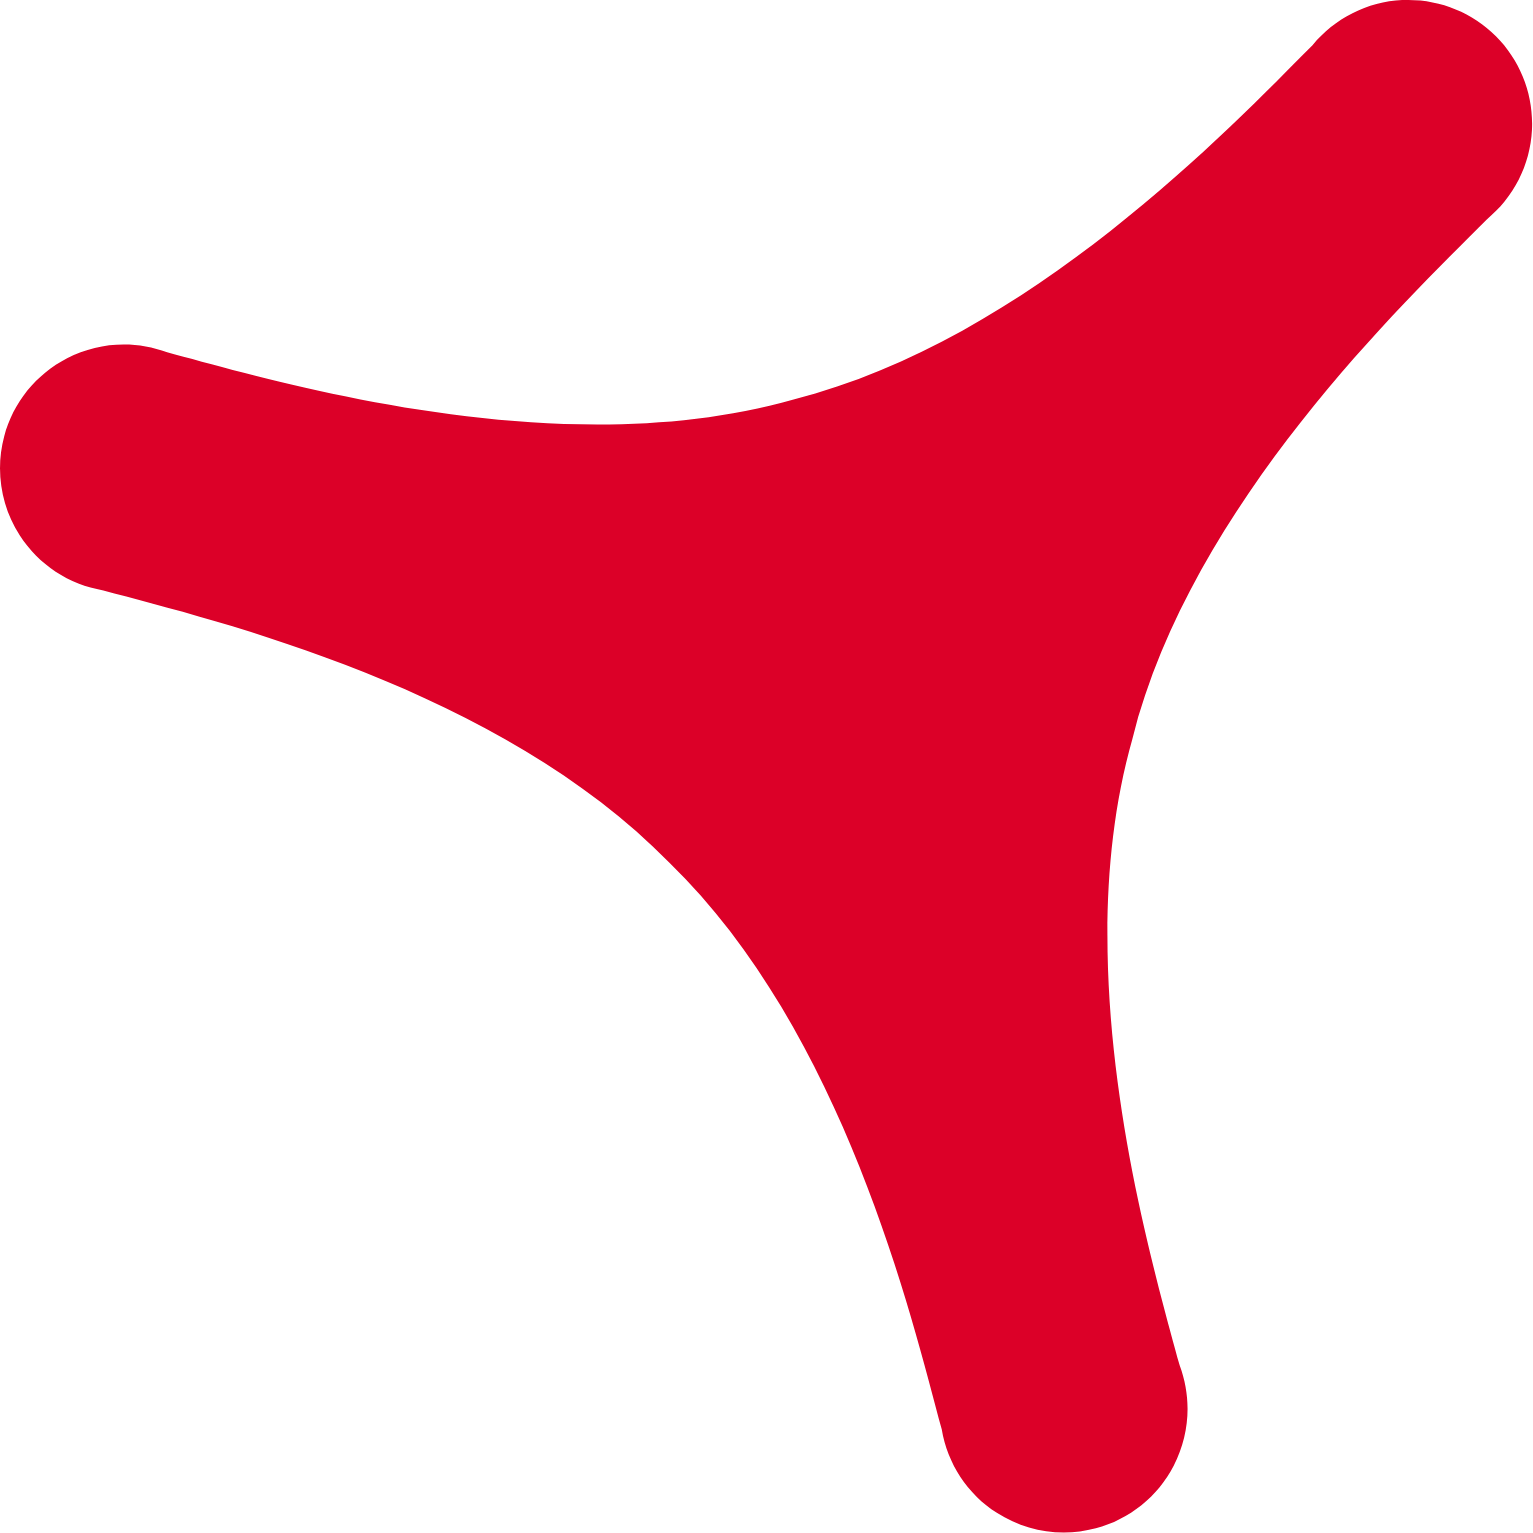 Grupo Catalana Occidente logo (transparent PNG)